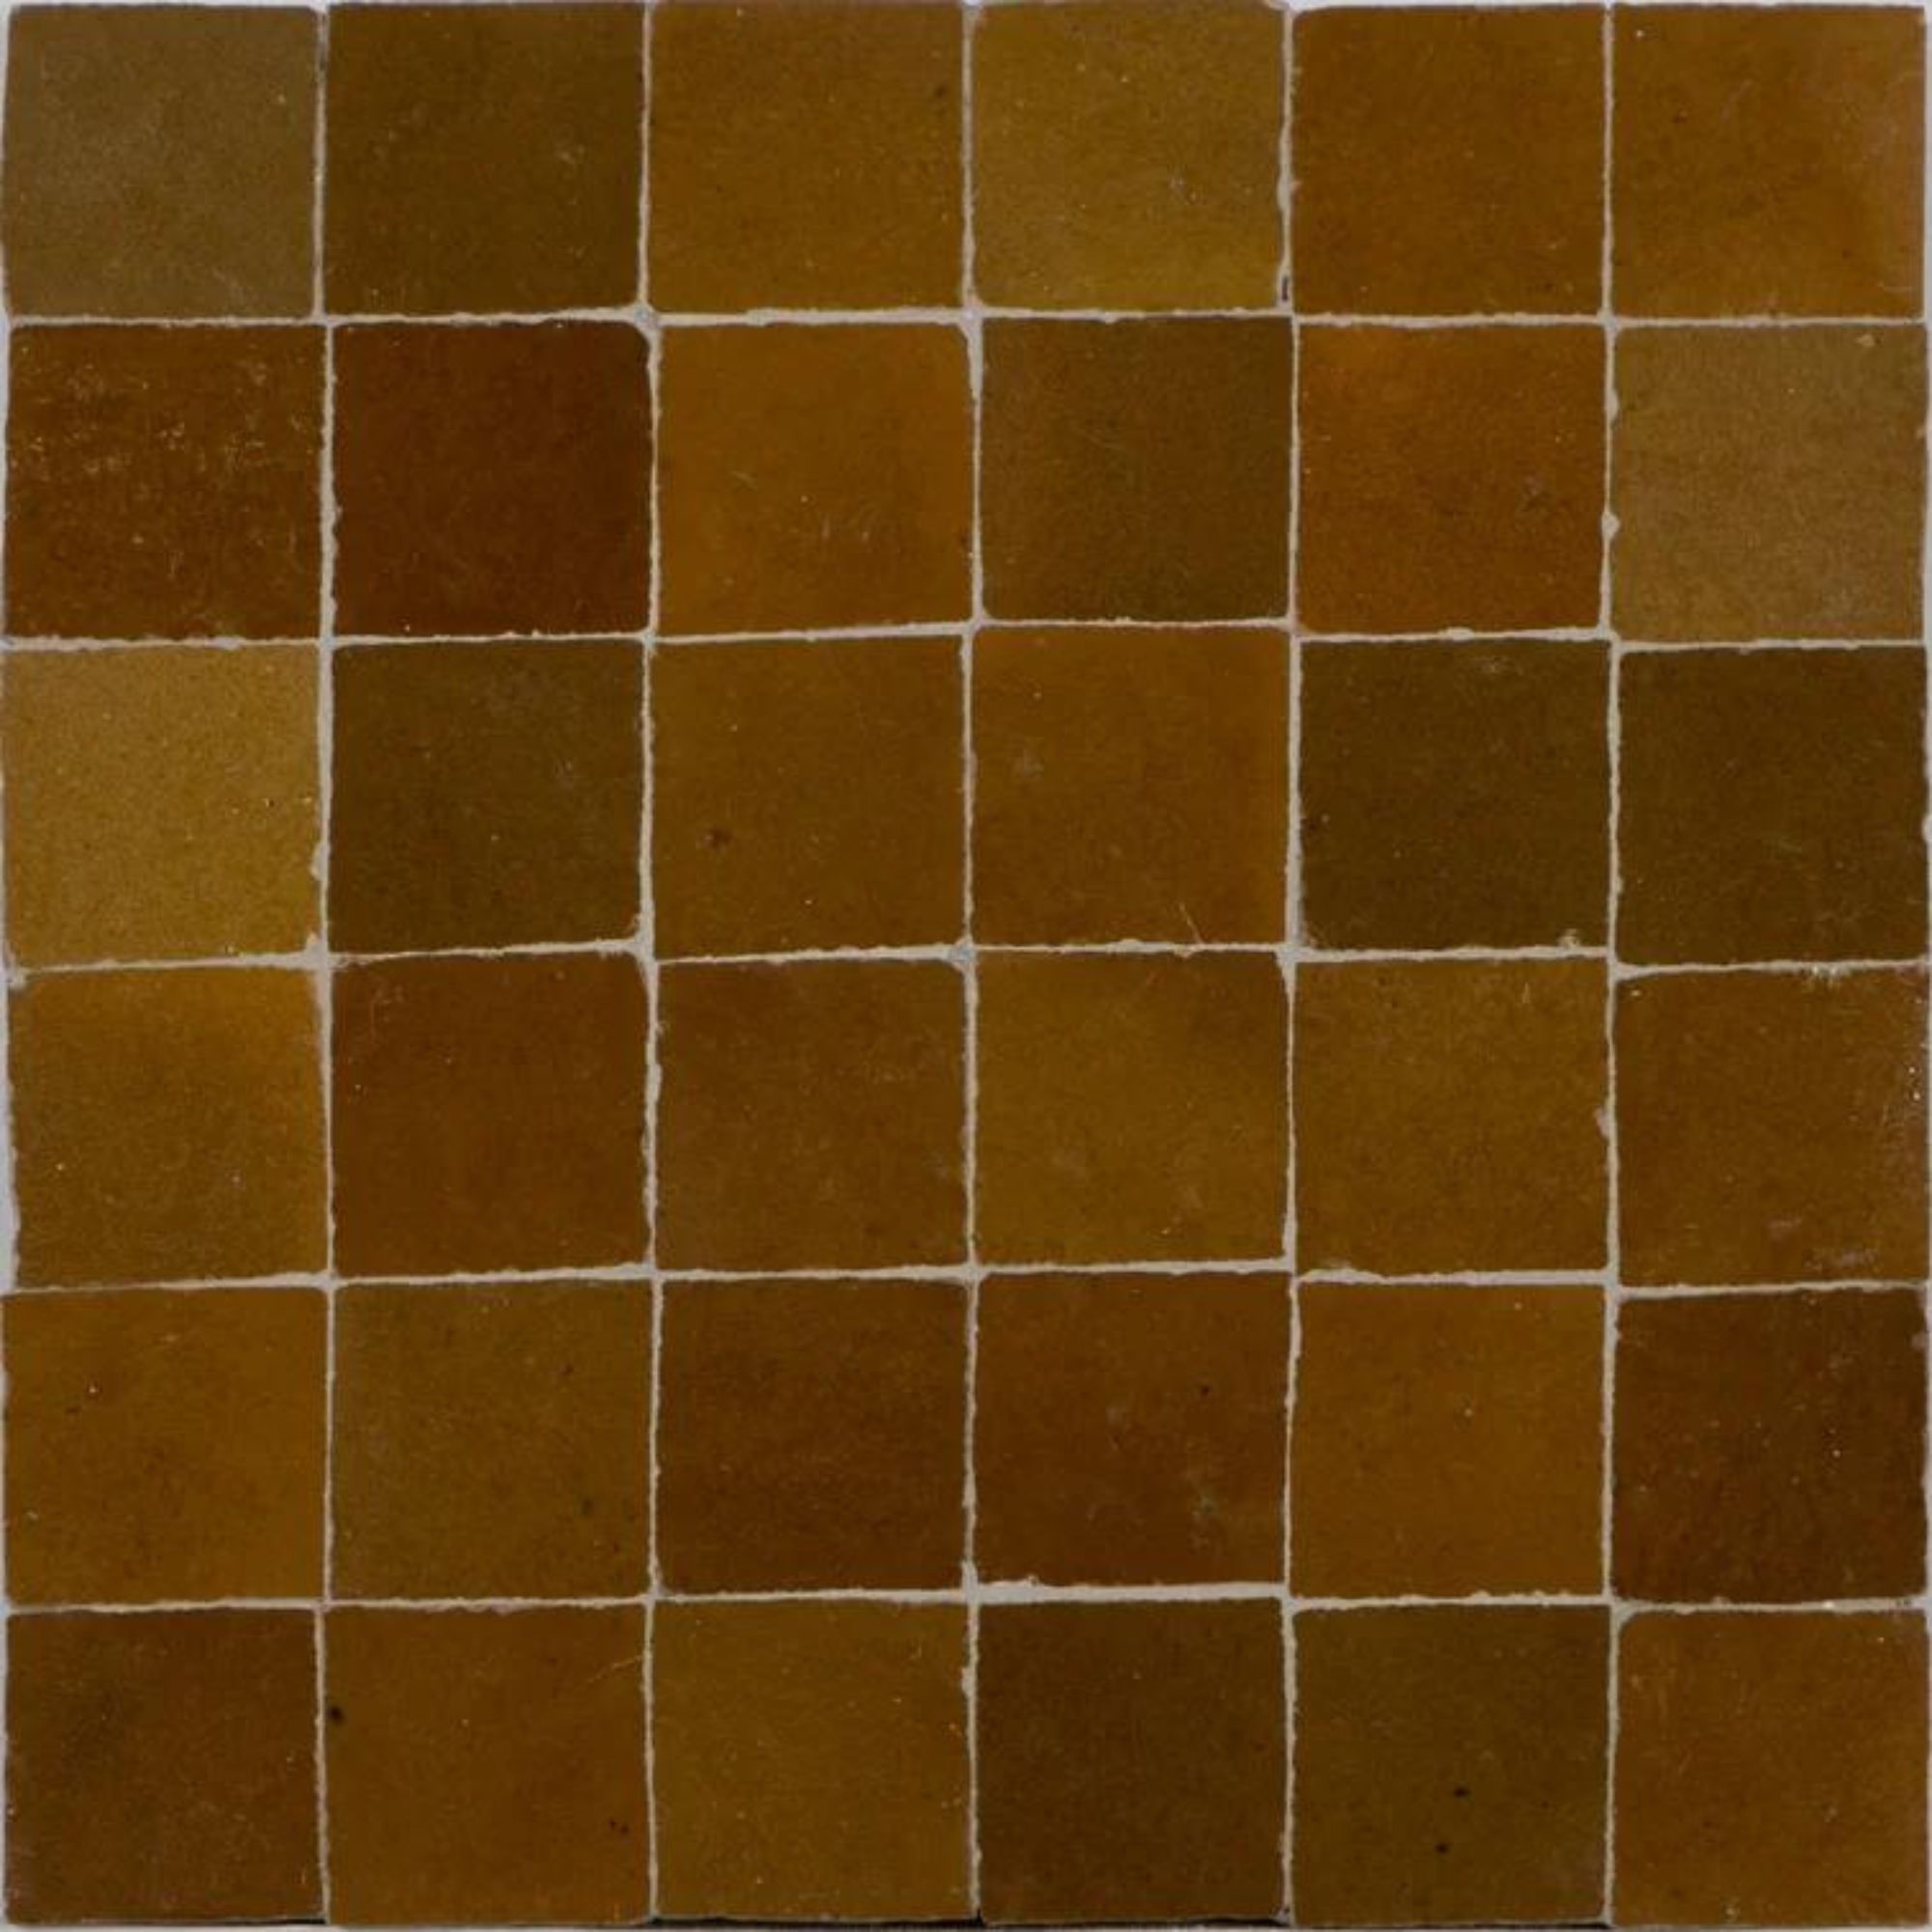 wayfair brown zellige tile